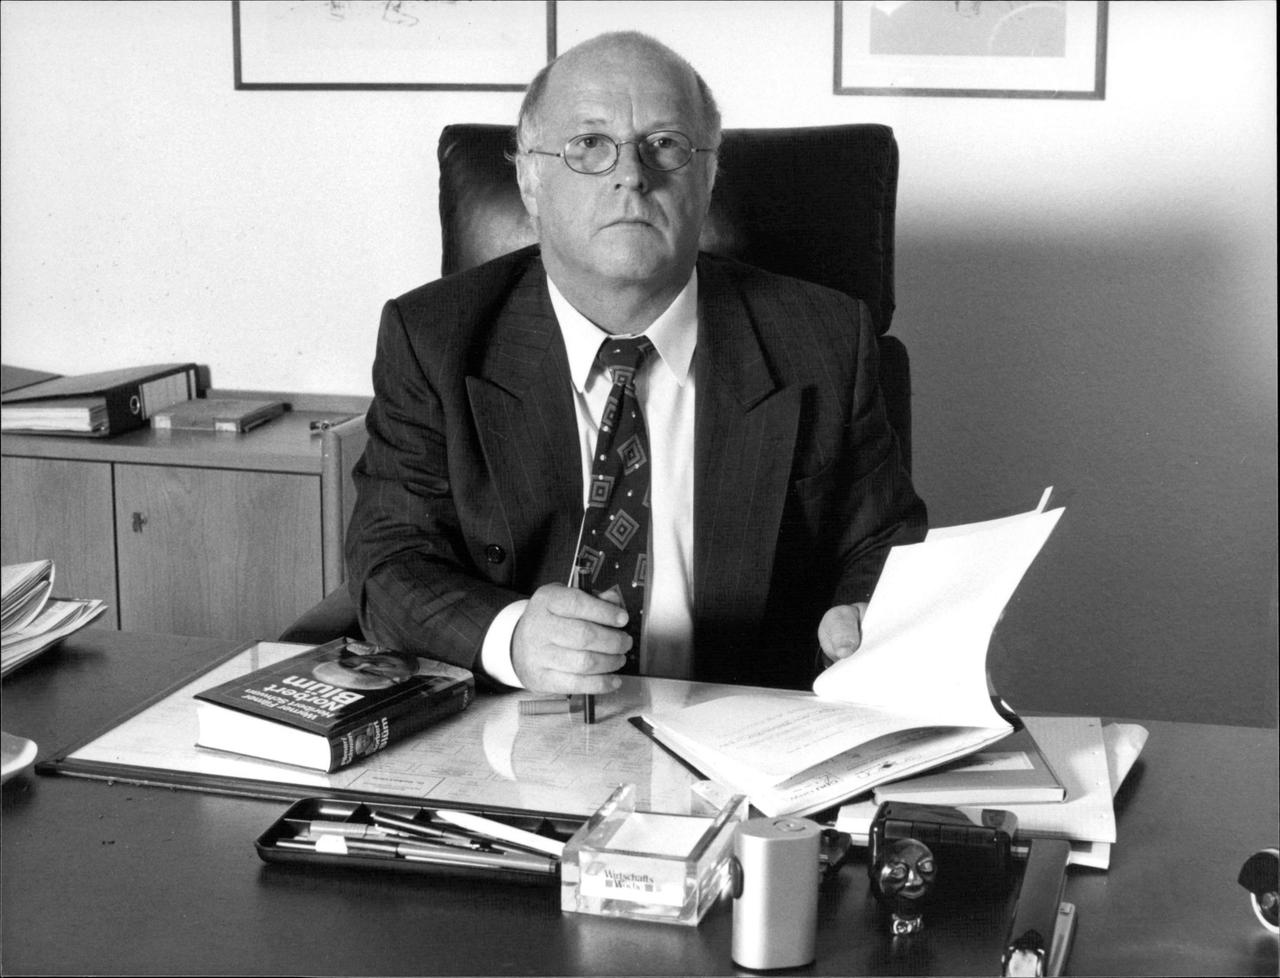 Das Foto zeigt Norbert Blüm, den Bundesminister für Arbeit und Sozialordnung, Spitzenkandidat der CDU von NRW für die Landtagswahlen 1990 hinter seinem Schreibtisch.